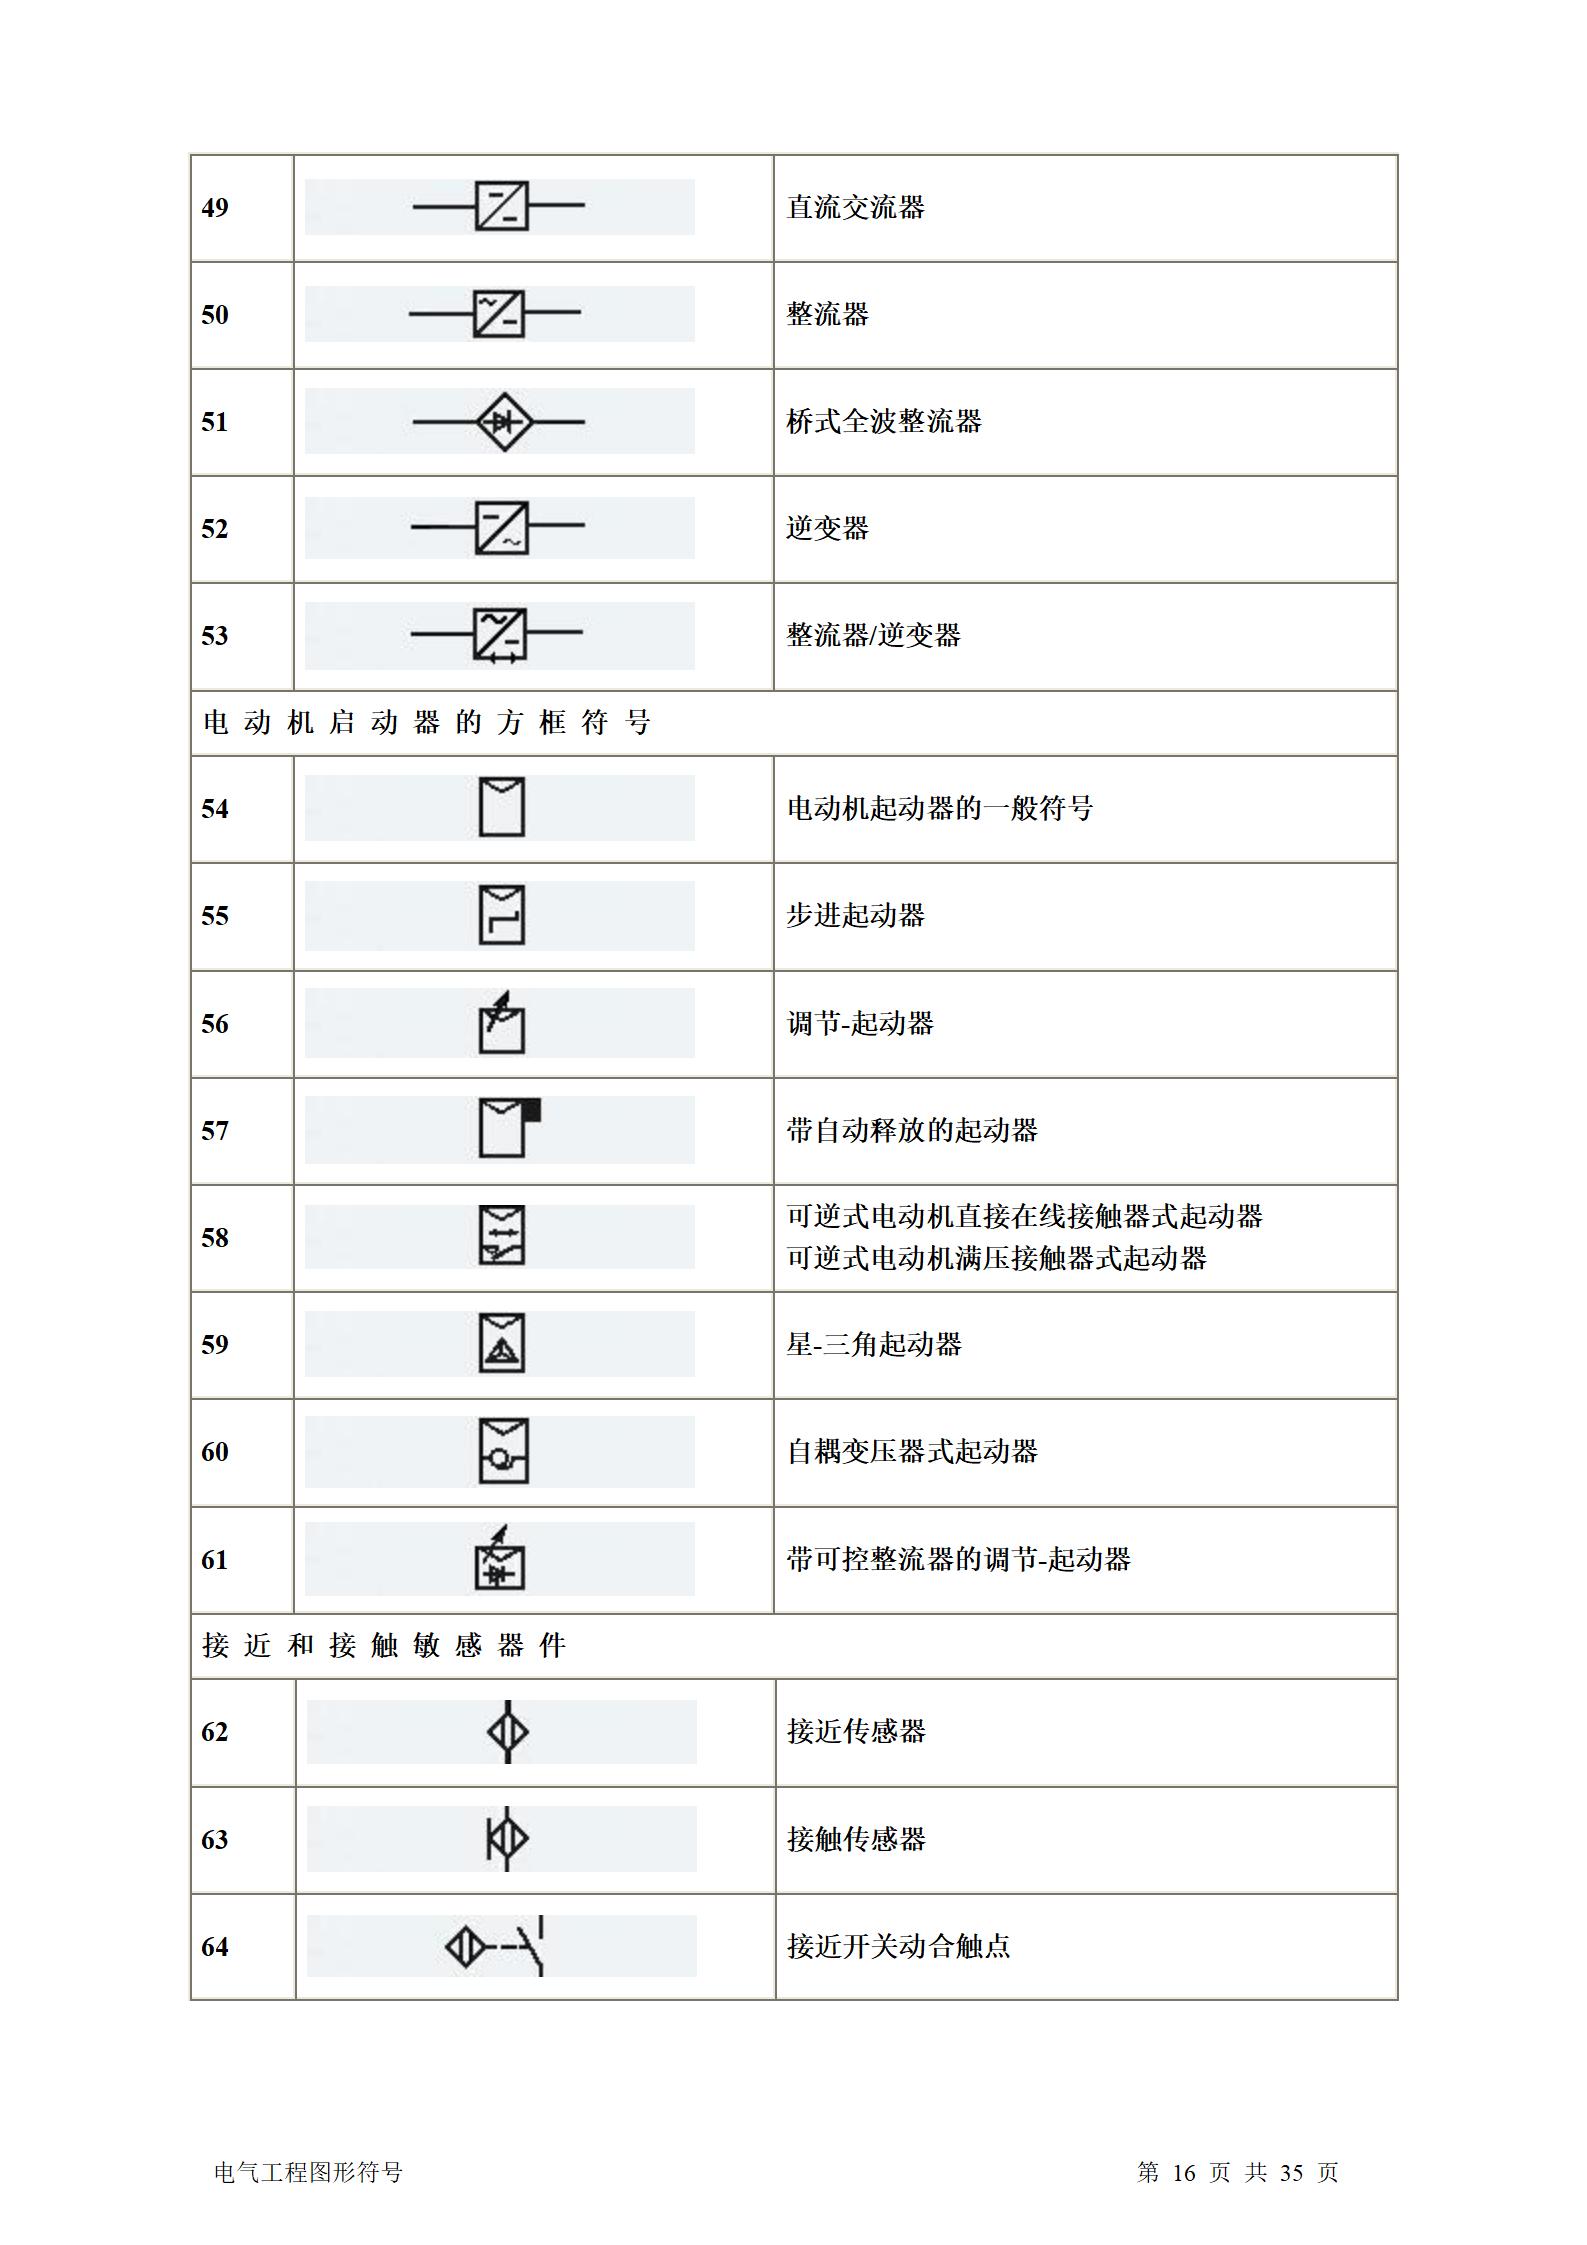 建筑电气、水暖、通风工程图形符号大全word版插图(16)